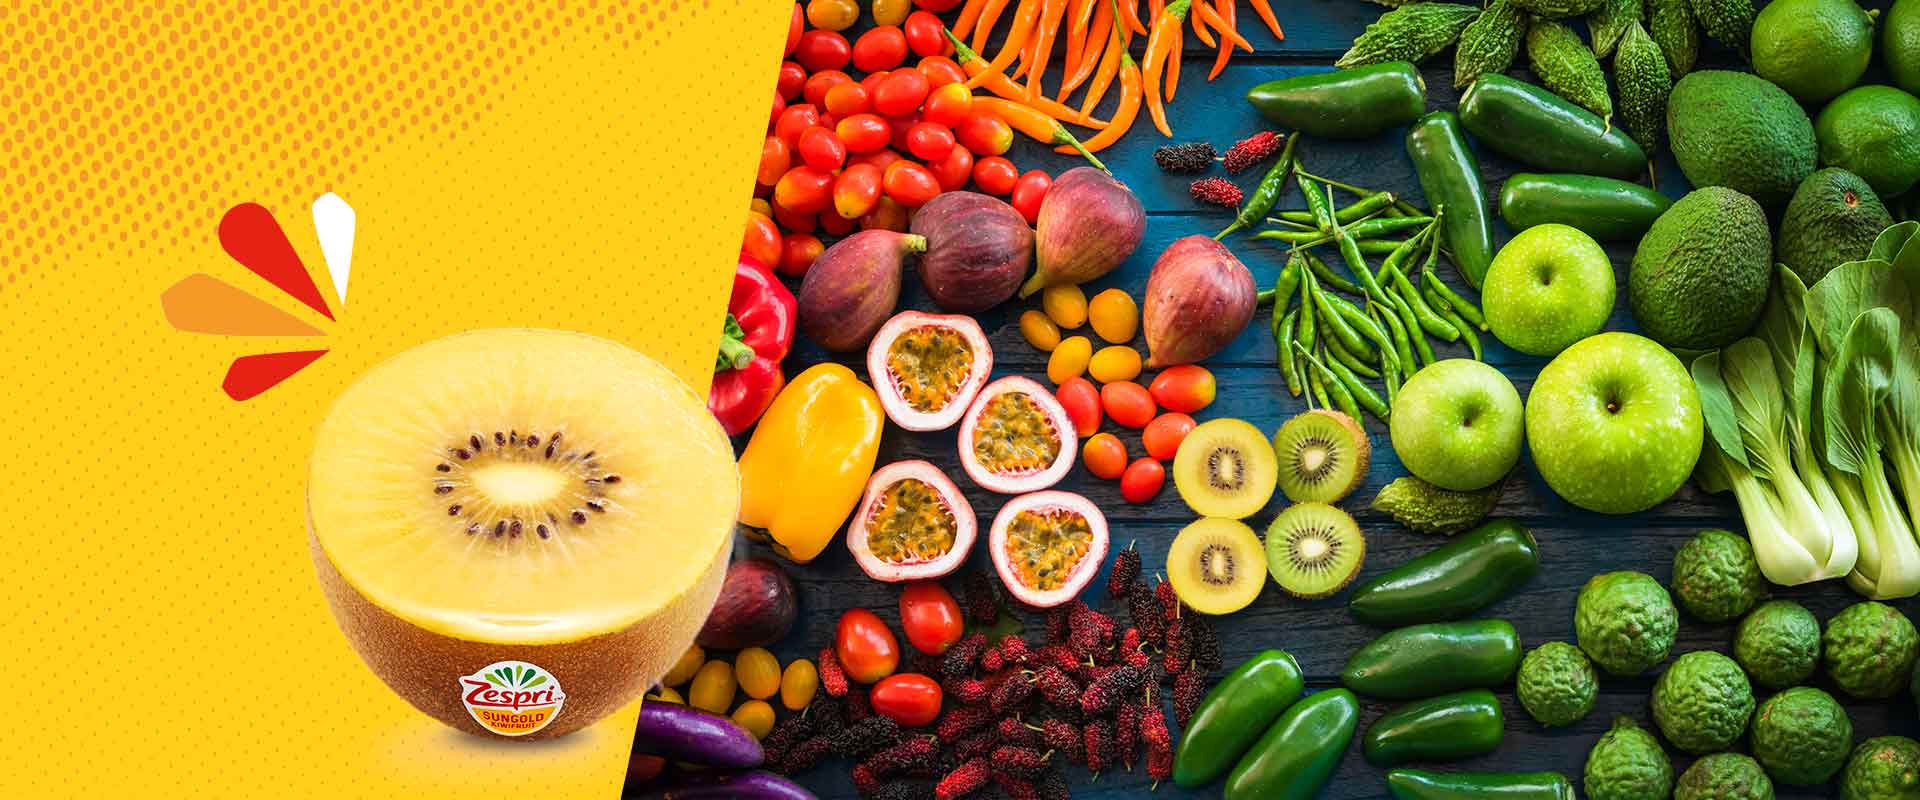 4 modi per rendere omaggio alla meraviglia della frutta e della verdura